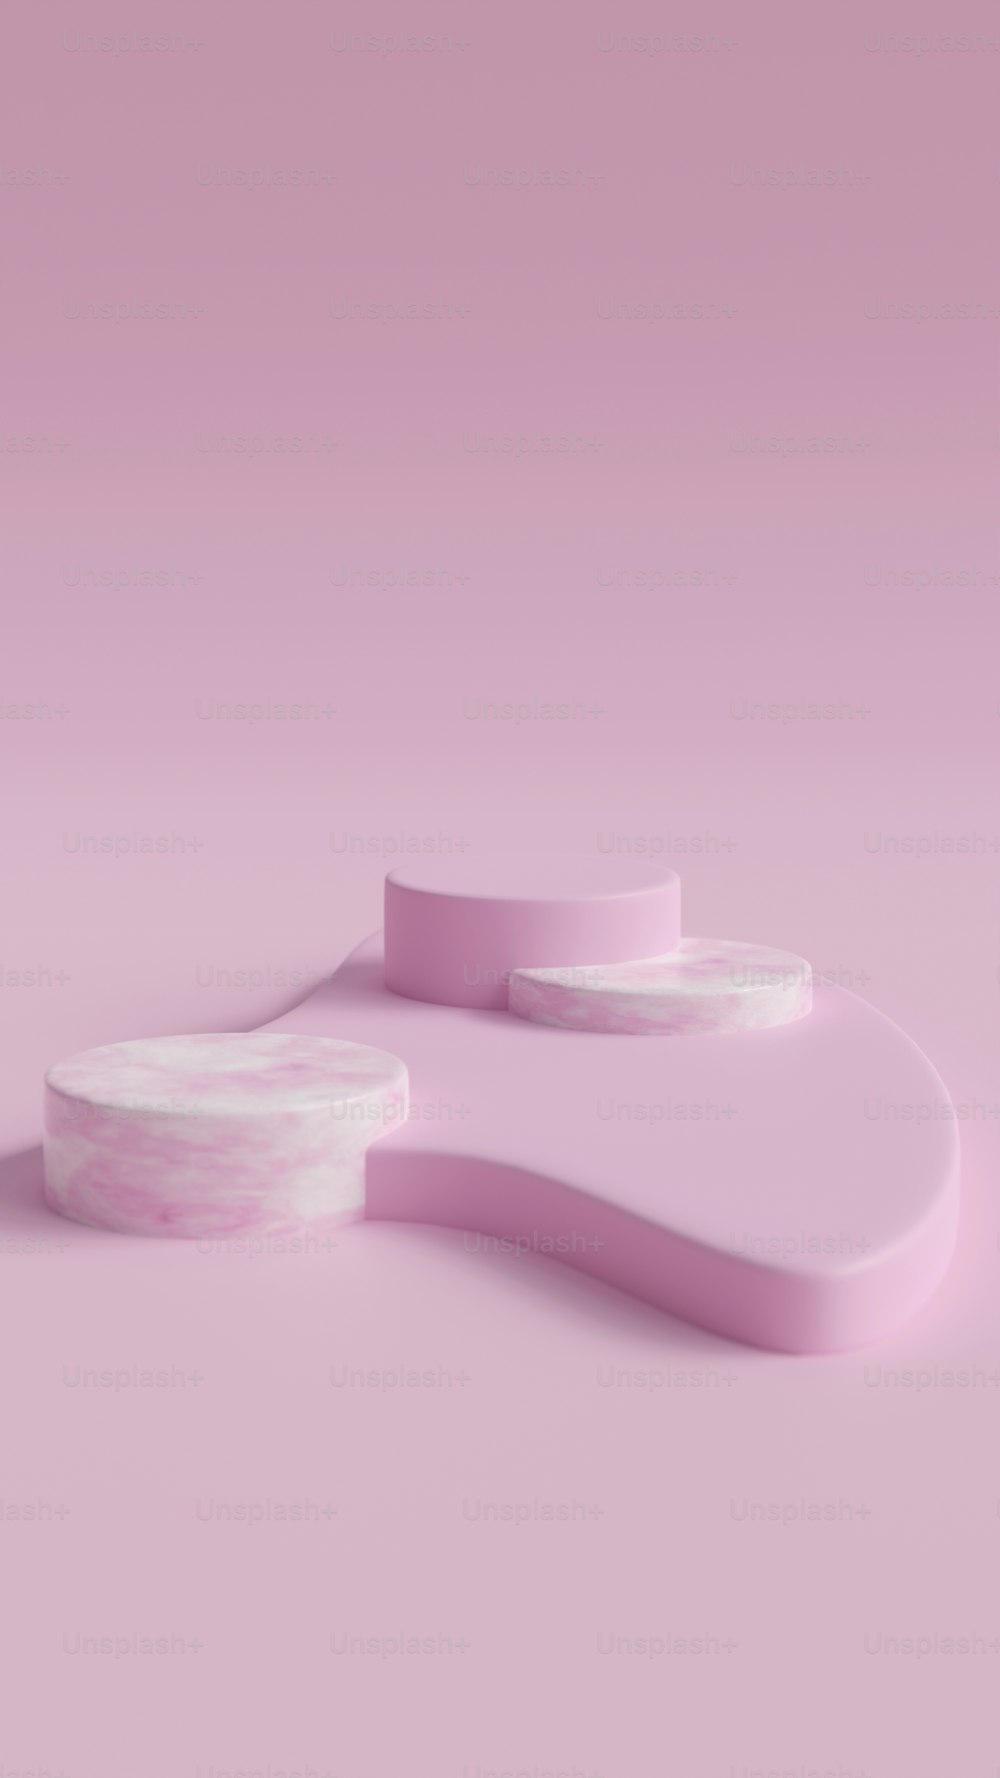 Un objeto rosa y blanco sobre un fondo rosa